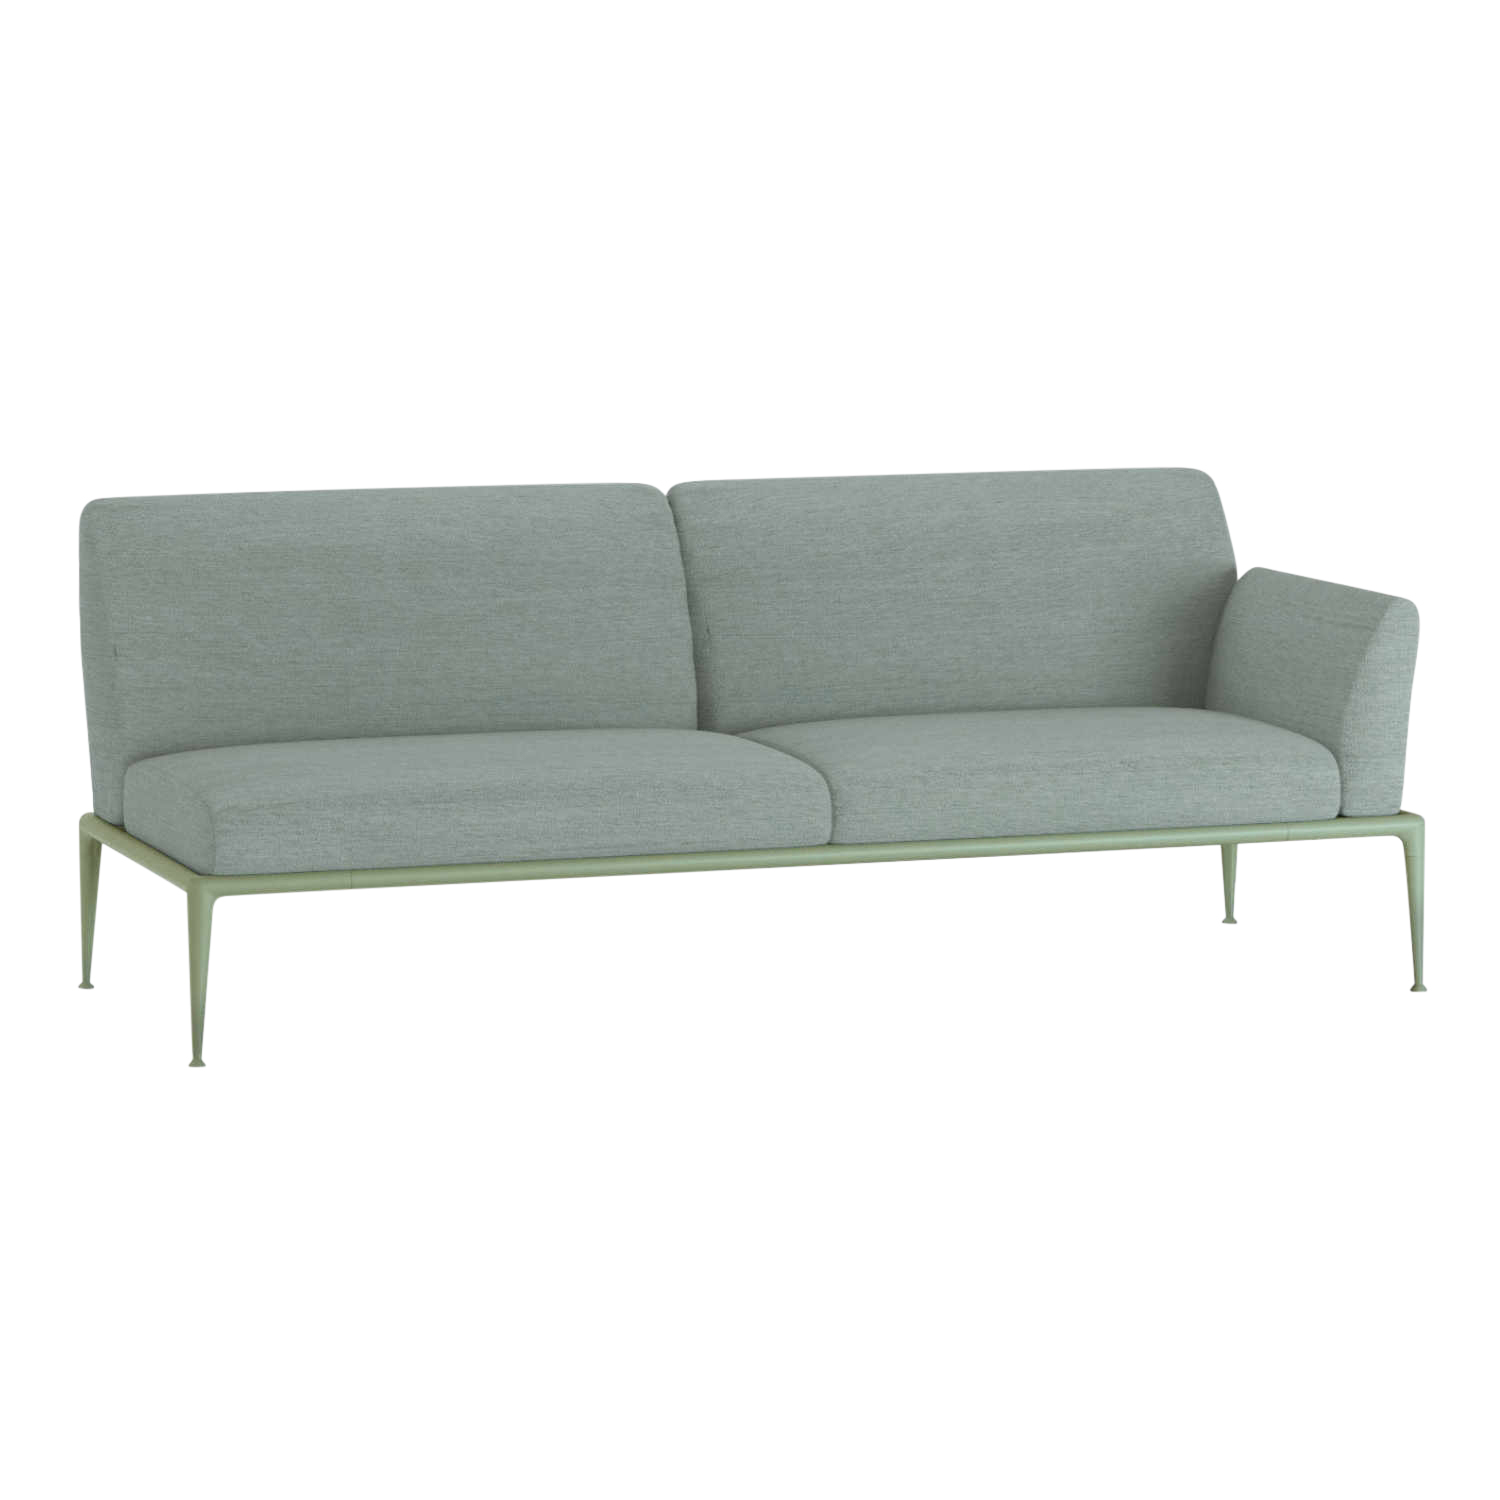 New Joint 3er Sofa, Ausführung armlehne links/sitzend rechts, Stoff range 1 solids, grey (grau), Gestell aluminium lackiert, powder grey (pulvergrau) von FAST